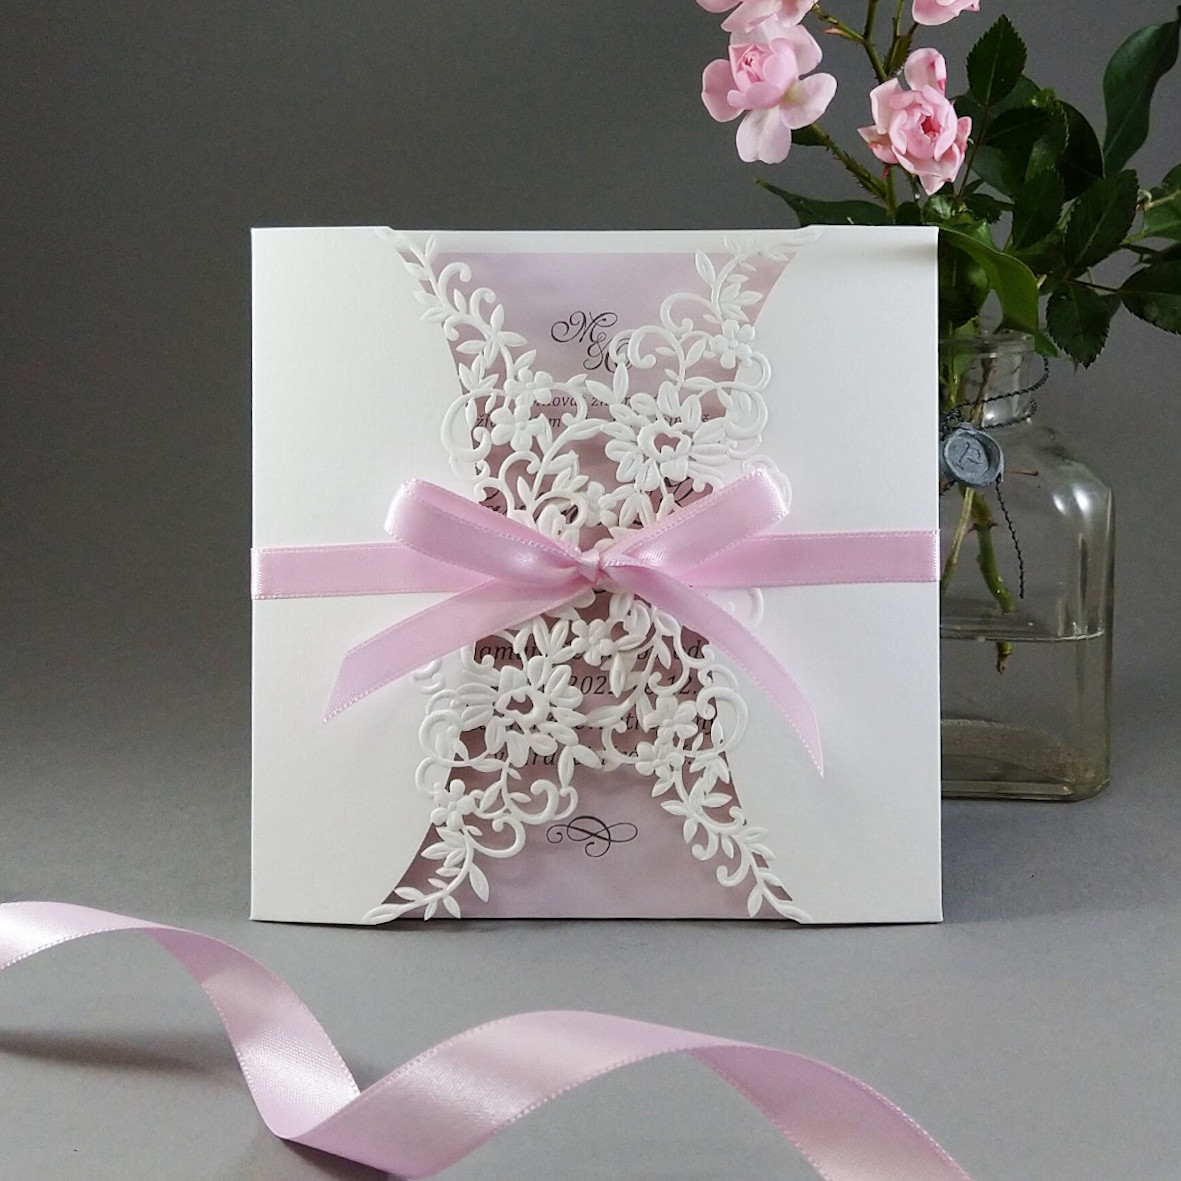 Svatební oznámení – čtvercové s krajkovým přebalem s růžovou vnitřní kartou a atlasovou stuhou.